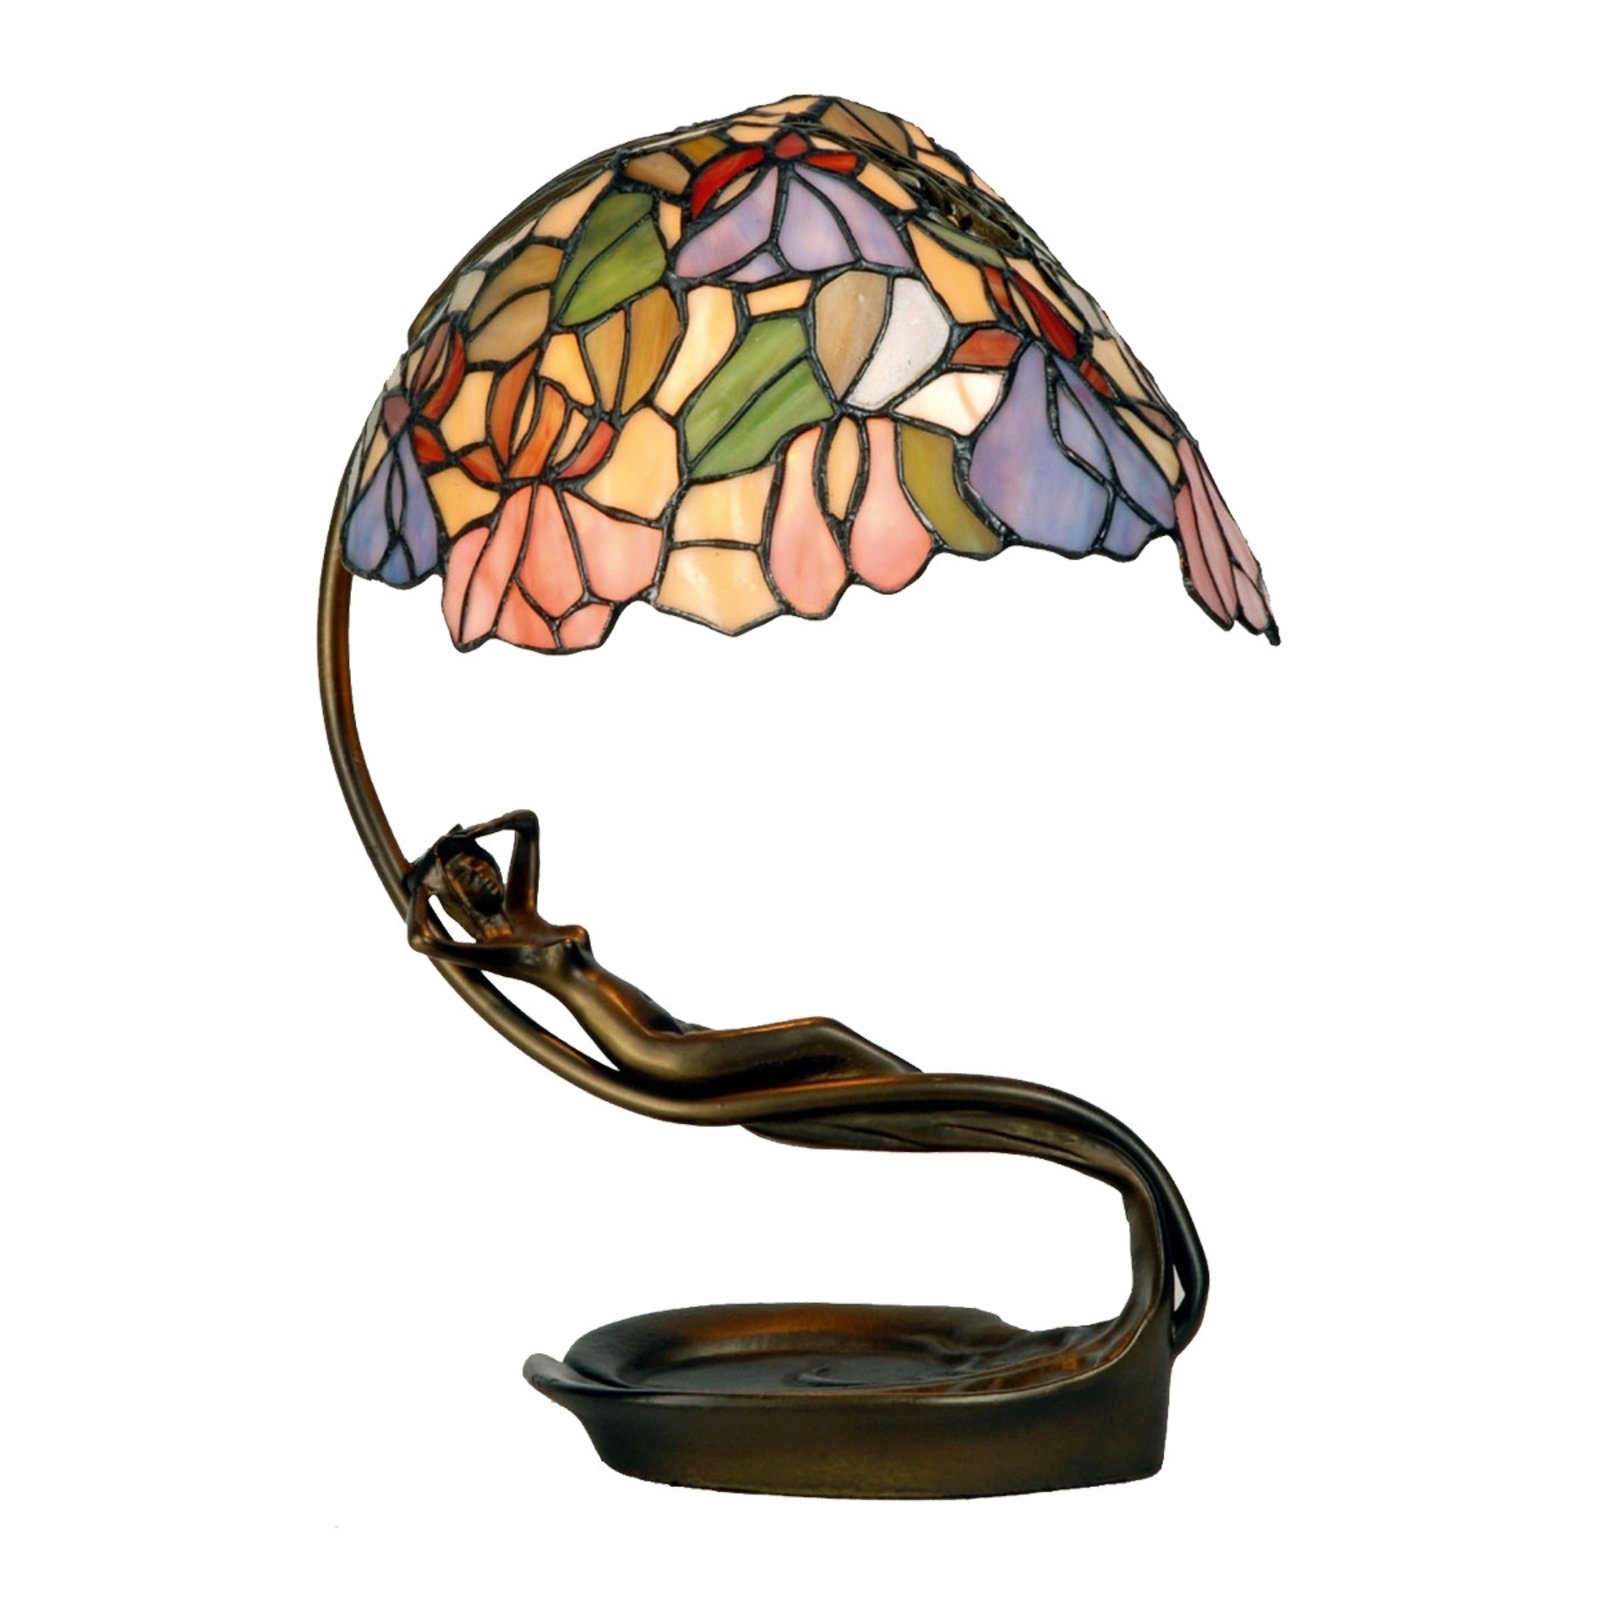 Izvrsna stolna lampa Eve u Tiffany stilu